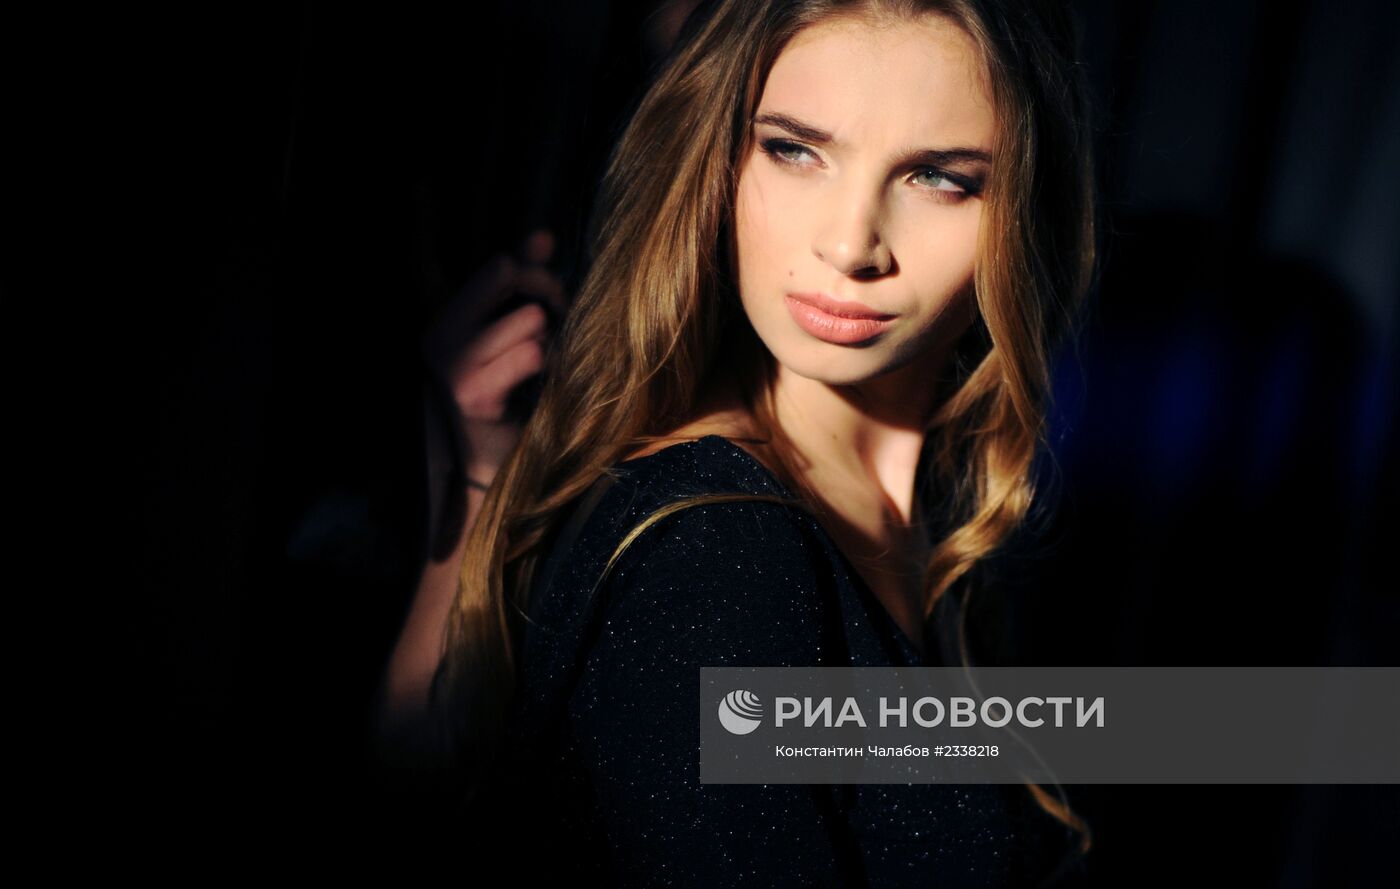 Финал конкурса "Мисс Россия 2014" - "Мисс Великий Новгород"